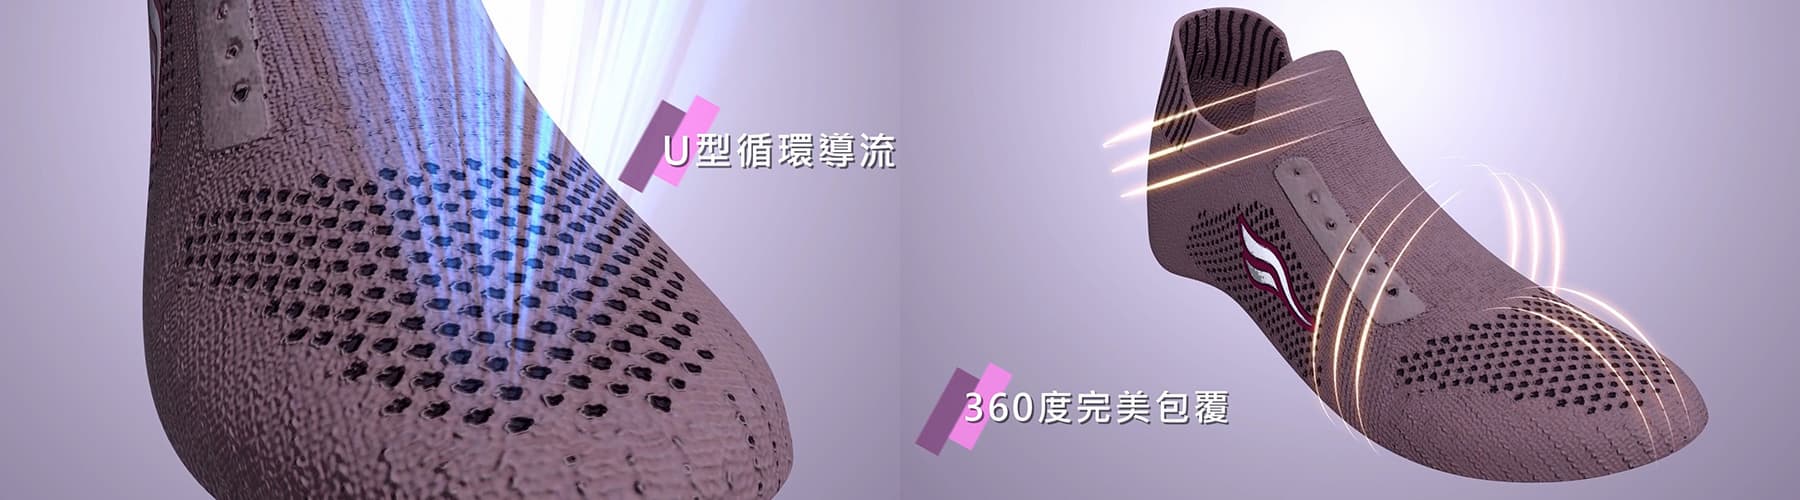 HANGTEN足弓專利休閒鞋3D動畫影片-4